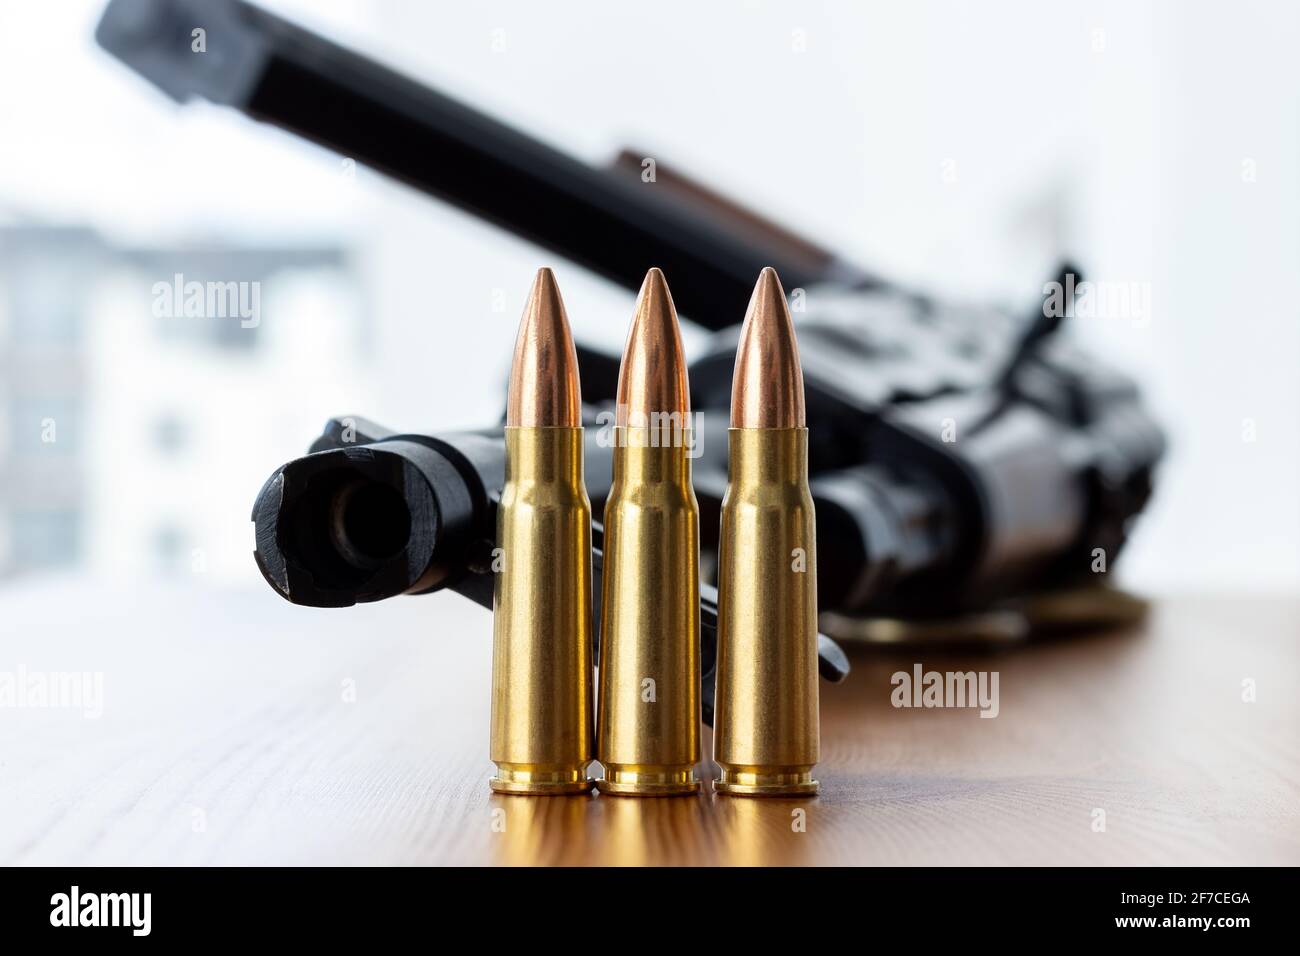 Drei Kugeln gegen verschwommene Kalaschnikow Sturmgewehr Hintergrund. Kartuschen im Kaliber 7.62 für ak 47 Nahaufnahme. Stockfoto